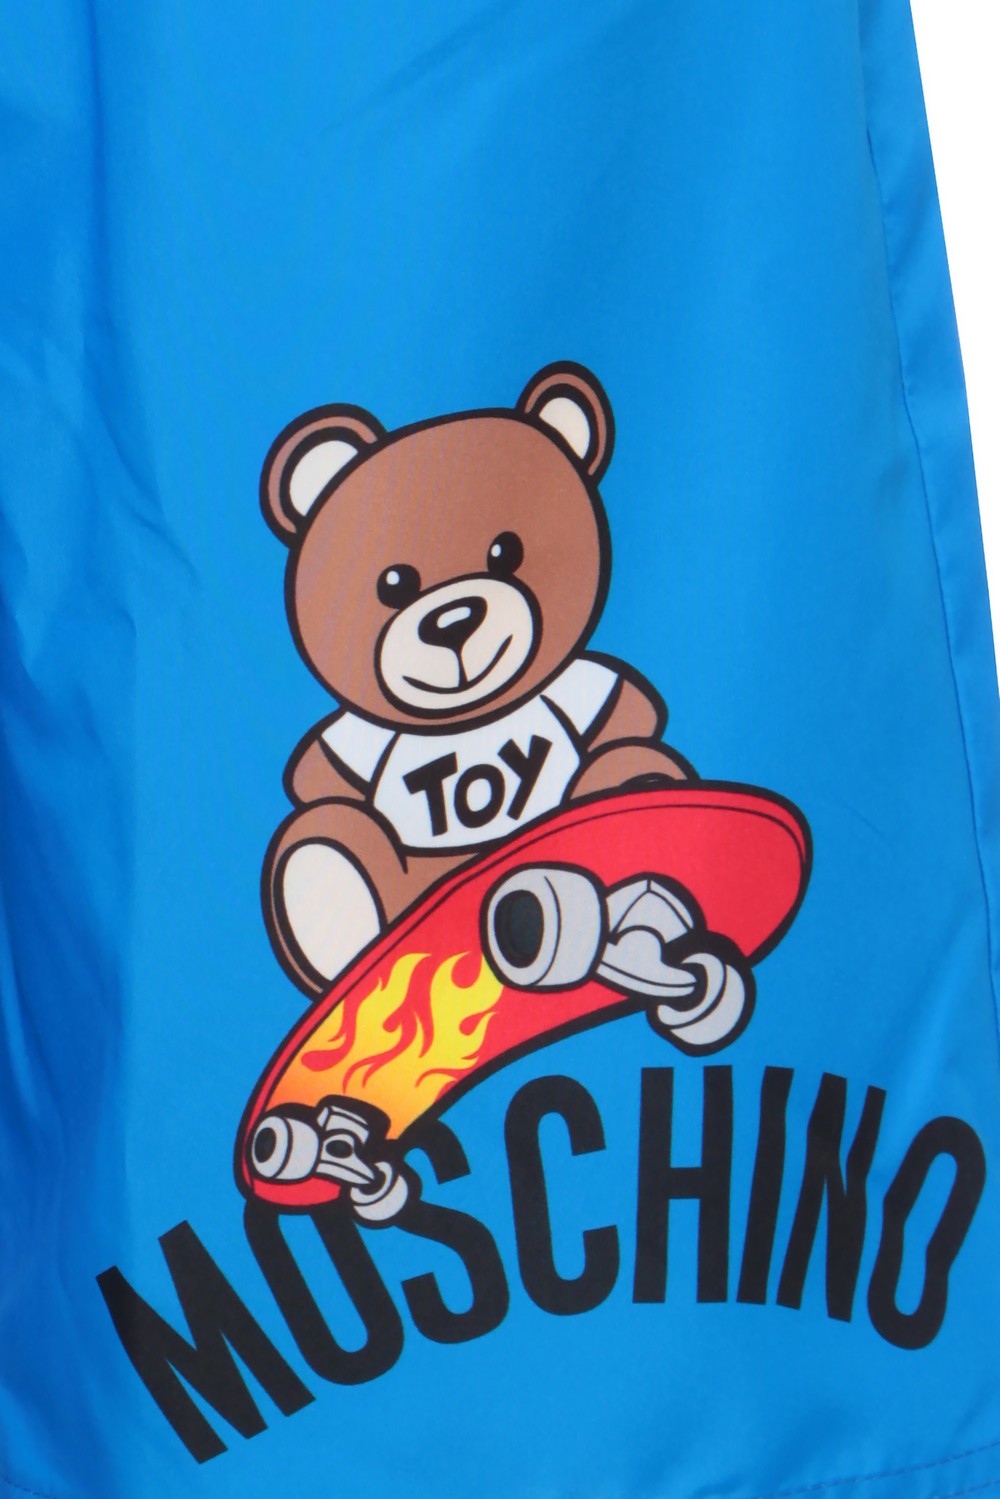 Moschino Удлиненные шорты для плавания с принтом-логотипом